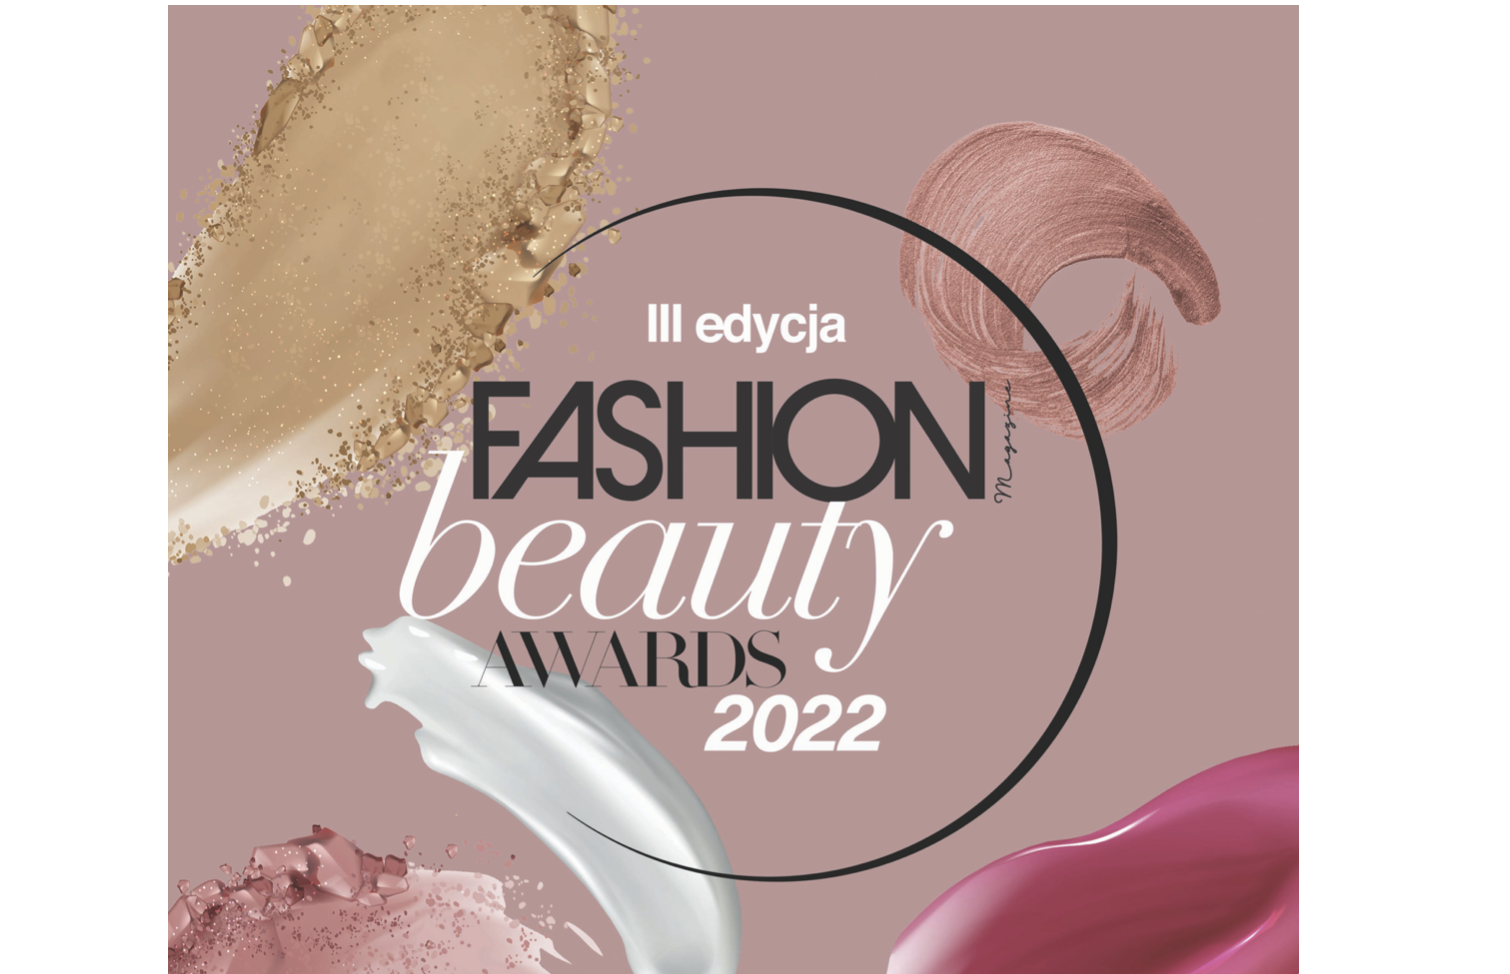 Fashion Magazine Beauty Awards 2022: zgłoś swoją markę